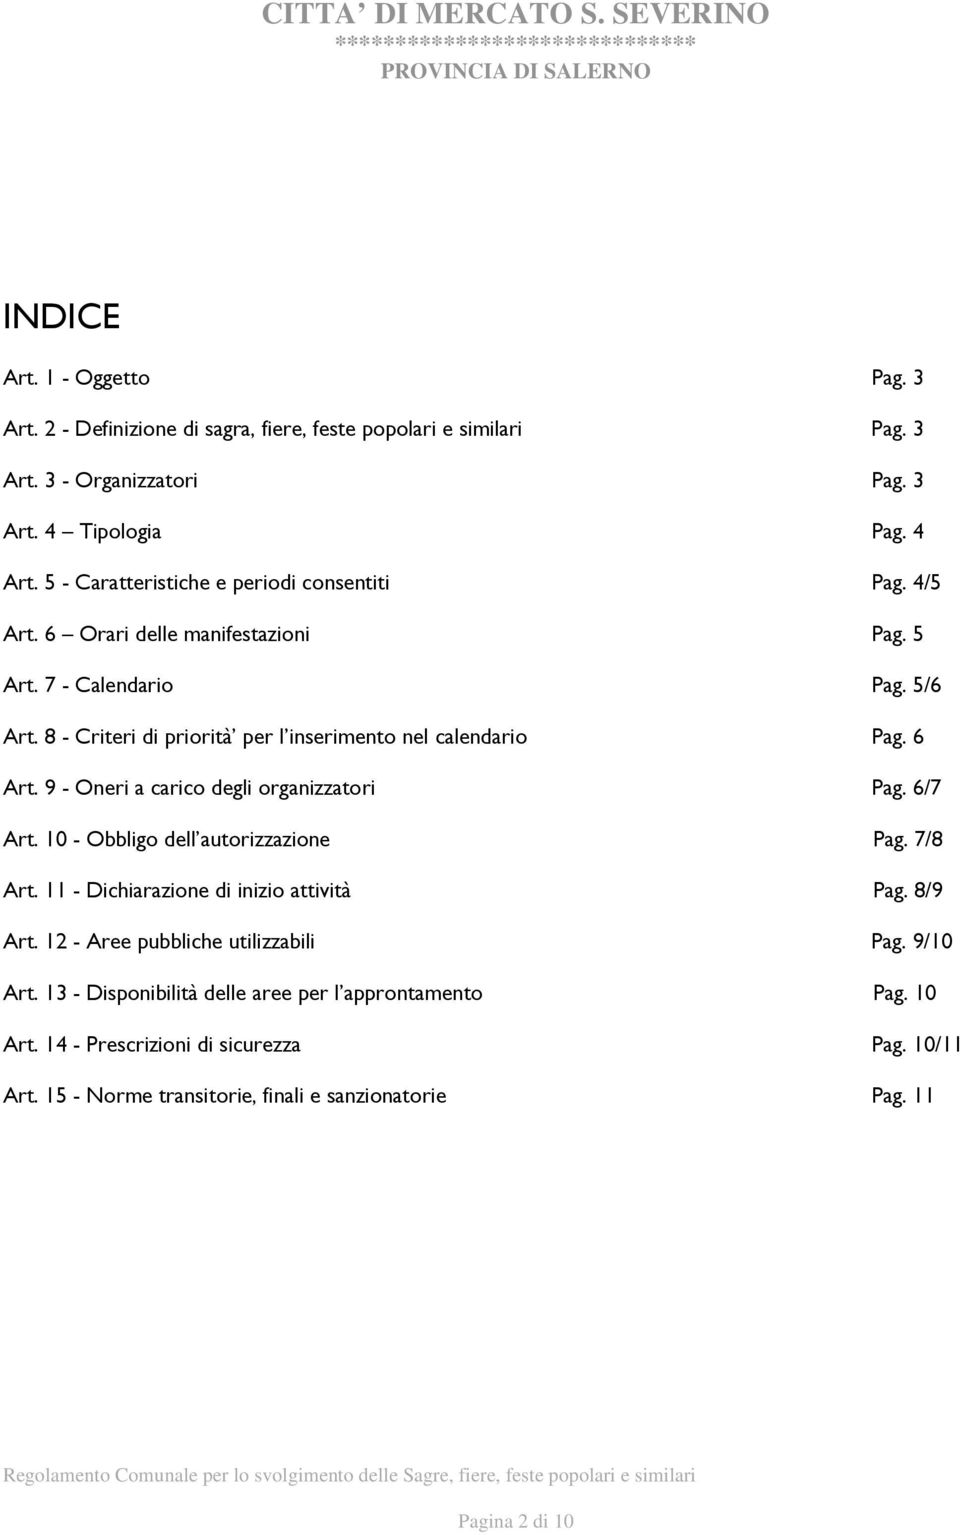 8 - Criteri di priorità per l inserimento nel calendario Pag. 6 Art. 9 - Oneri a carico degli organizzatori Pag. 6/7 Art. 10 - Obbligo dell autorizzazione Pag. 7/8 Art.